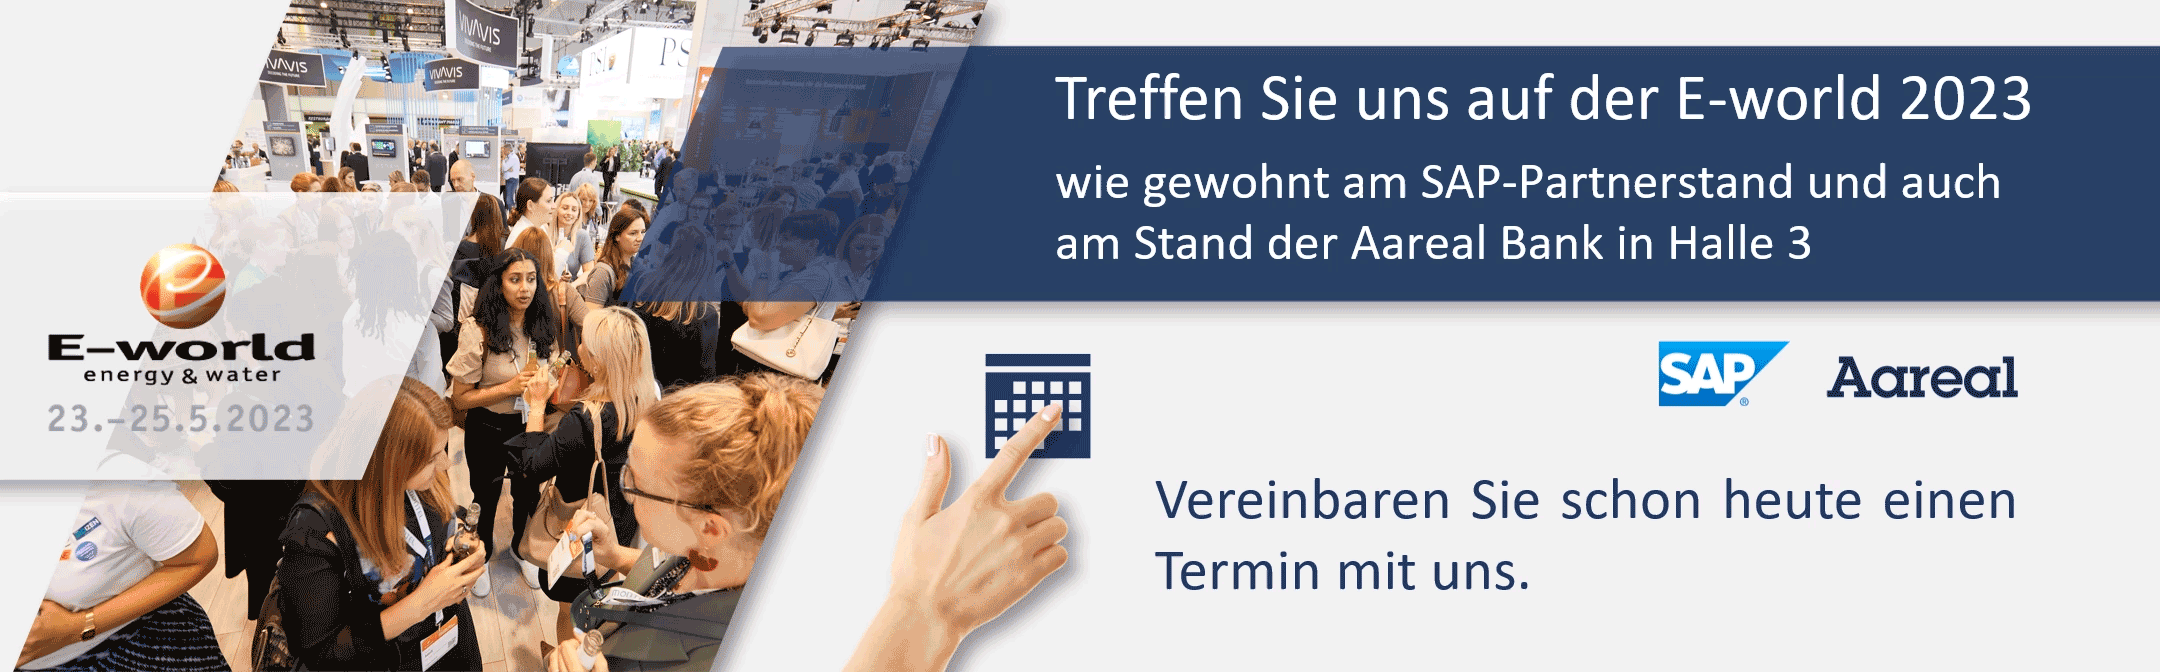 DSC GmbH - Treffen Sie uns auf der E-world 2023 wie gewohnt am SAP-Partnerstand und auch am Stand der Aareal Bank in Halle 3